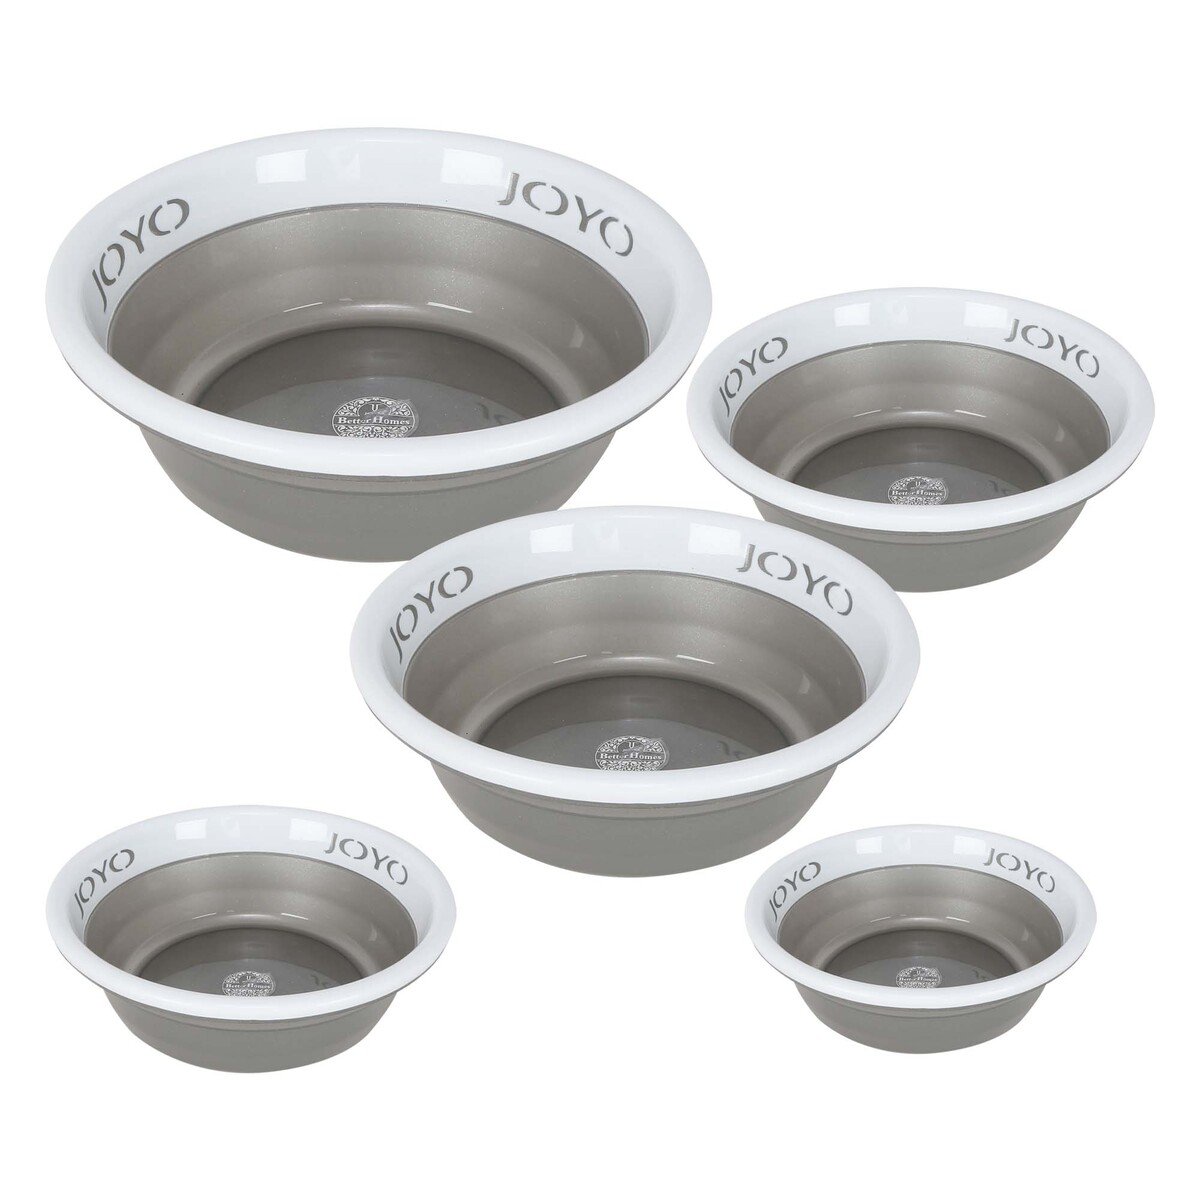 Joyo Basin 5pcs Set Size: 16+20+24+28+32cm